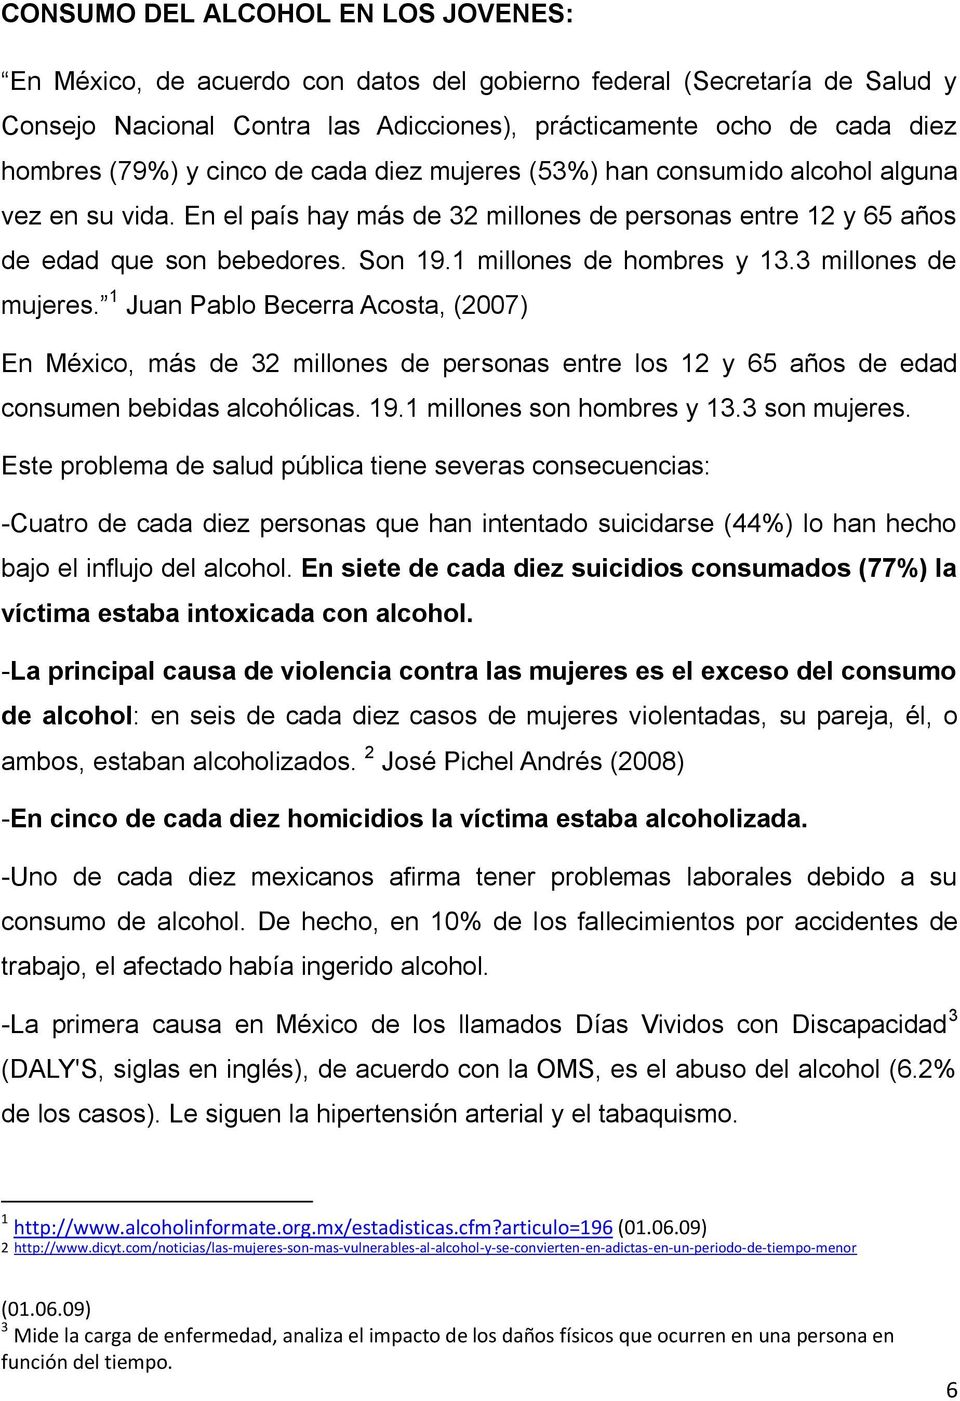 1 millones de hombres y 13.3 millones de mujeres. 1 Juan Pablo Becerra Acosta, (2007) En México, más de 32 millones de personas entre los 12 y 65 años de edad consumen bebidas alcohólicas. 19.